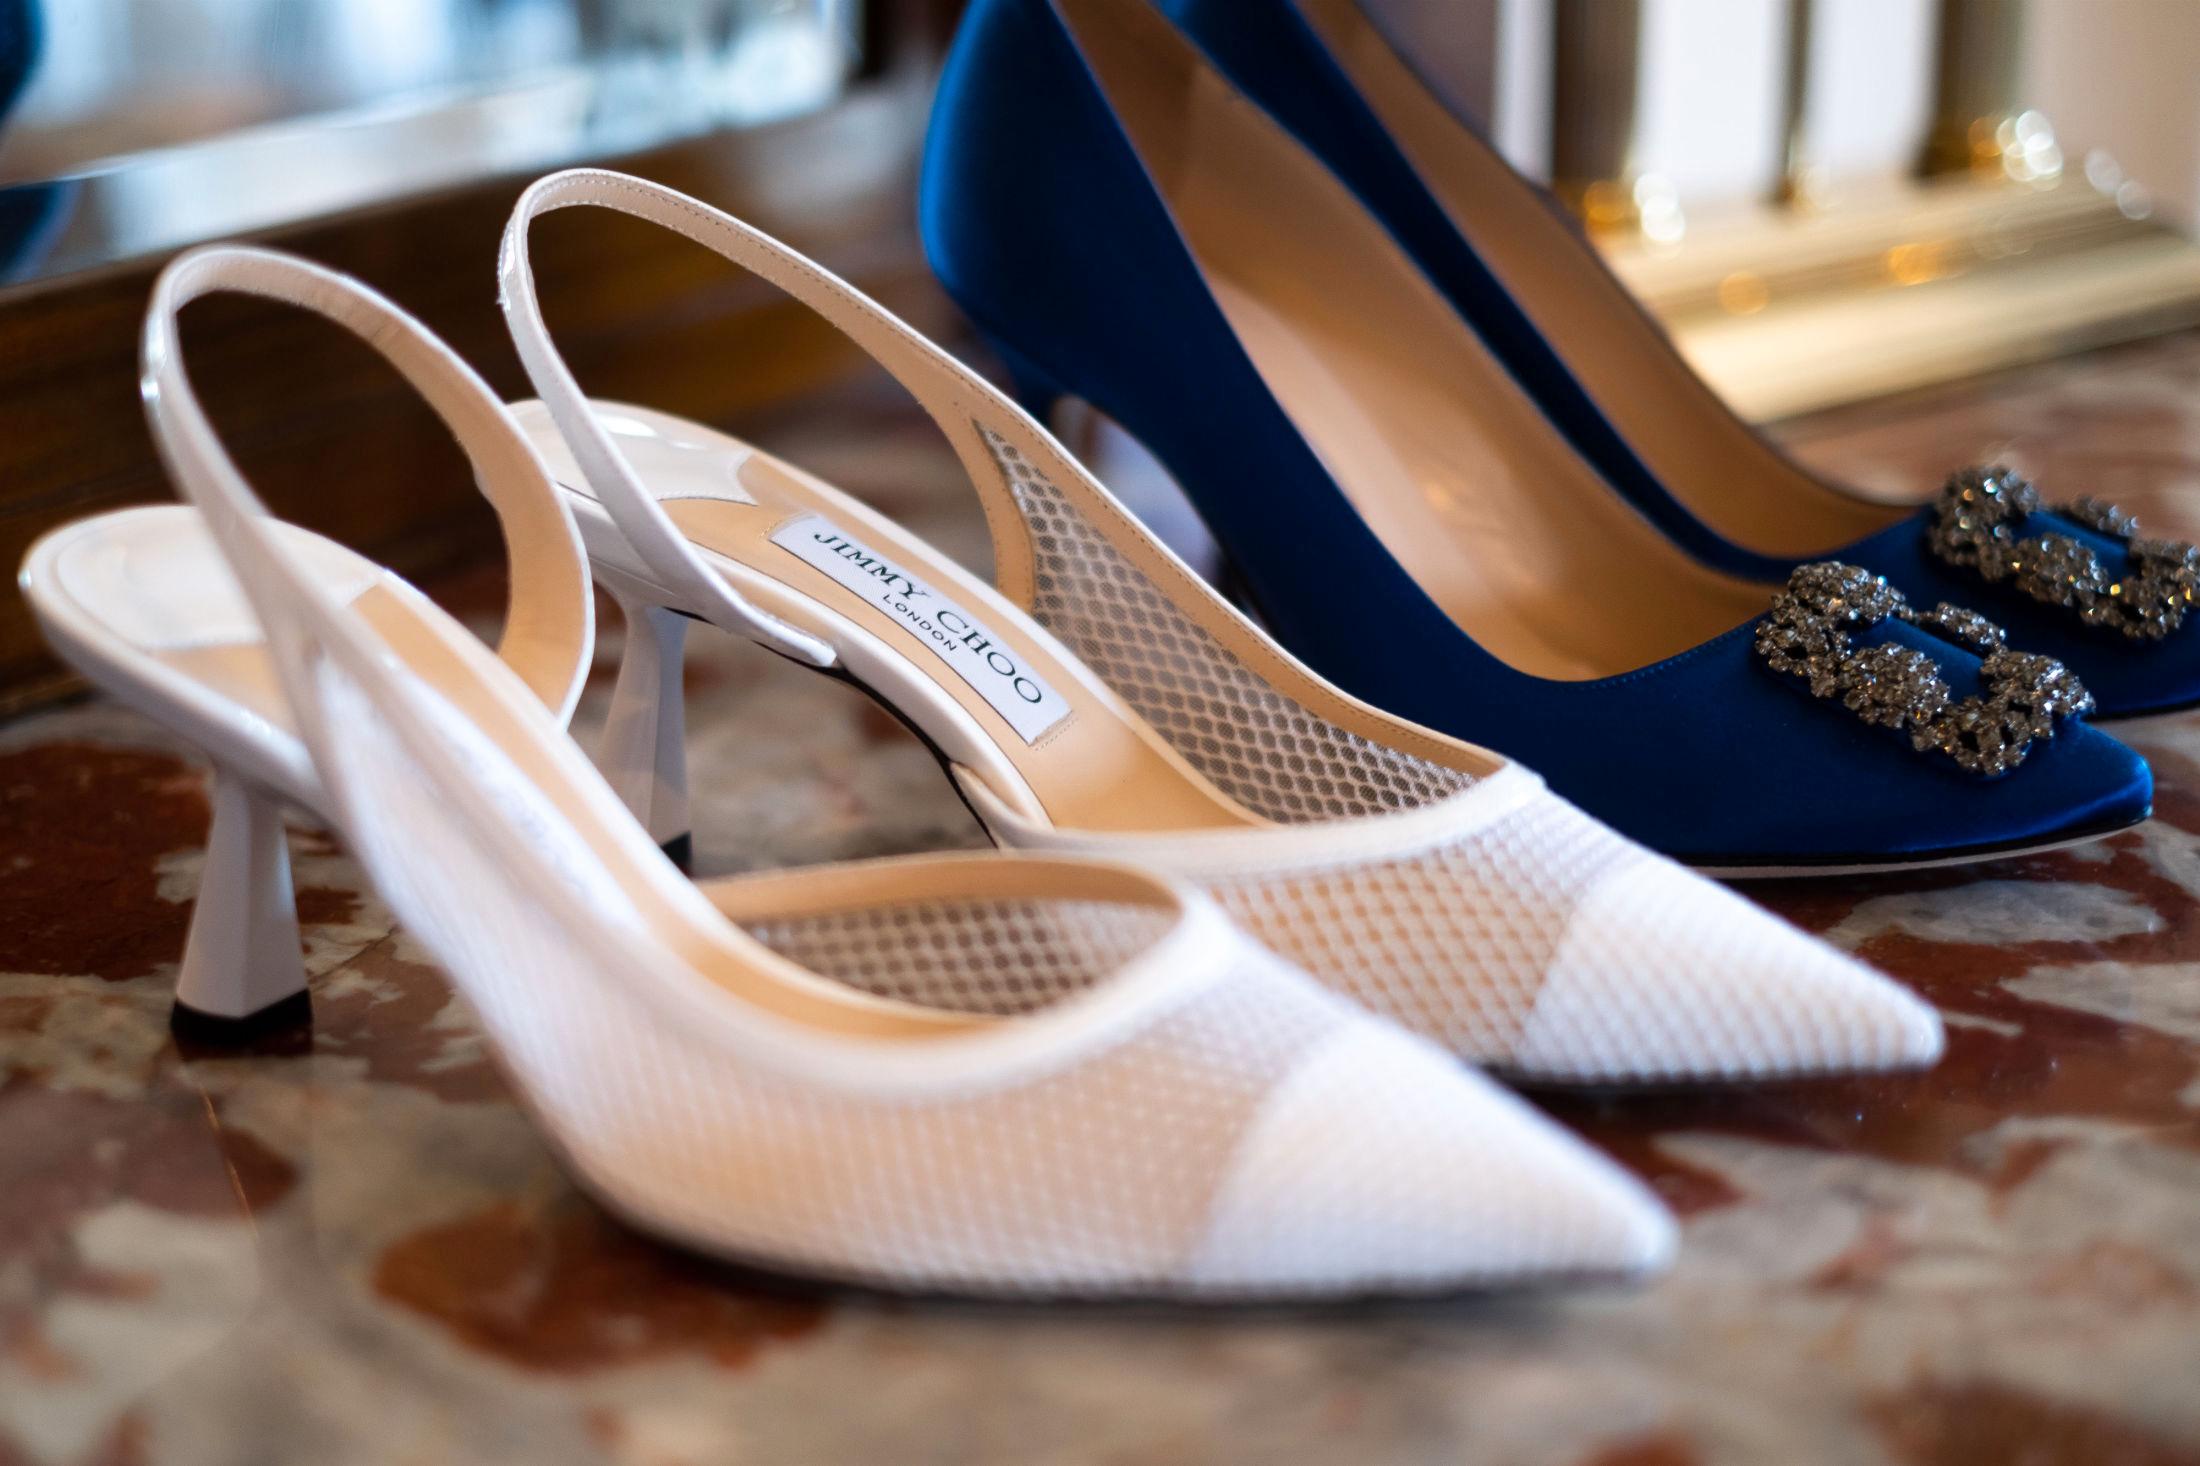 GODT SKODD: Skoene fra Jimmy Choo ble brukt under vielsen i Oslo rådhus og til middagen. De blå «Carrie»-skoene er i modellen Hangisi fra Manolo Blahnik. Foto: Privat.